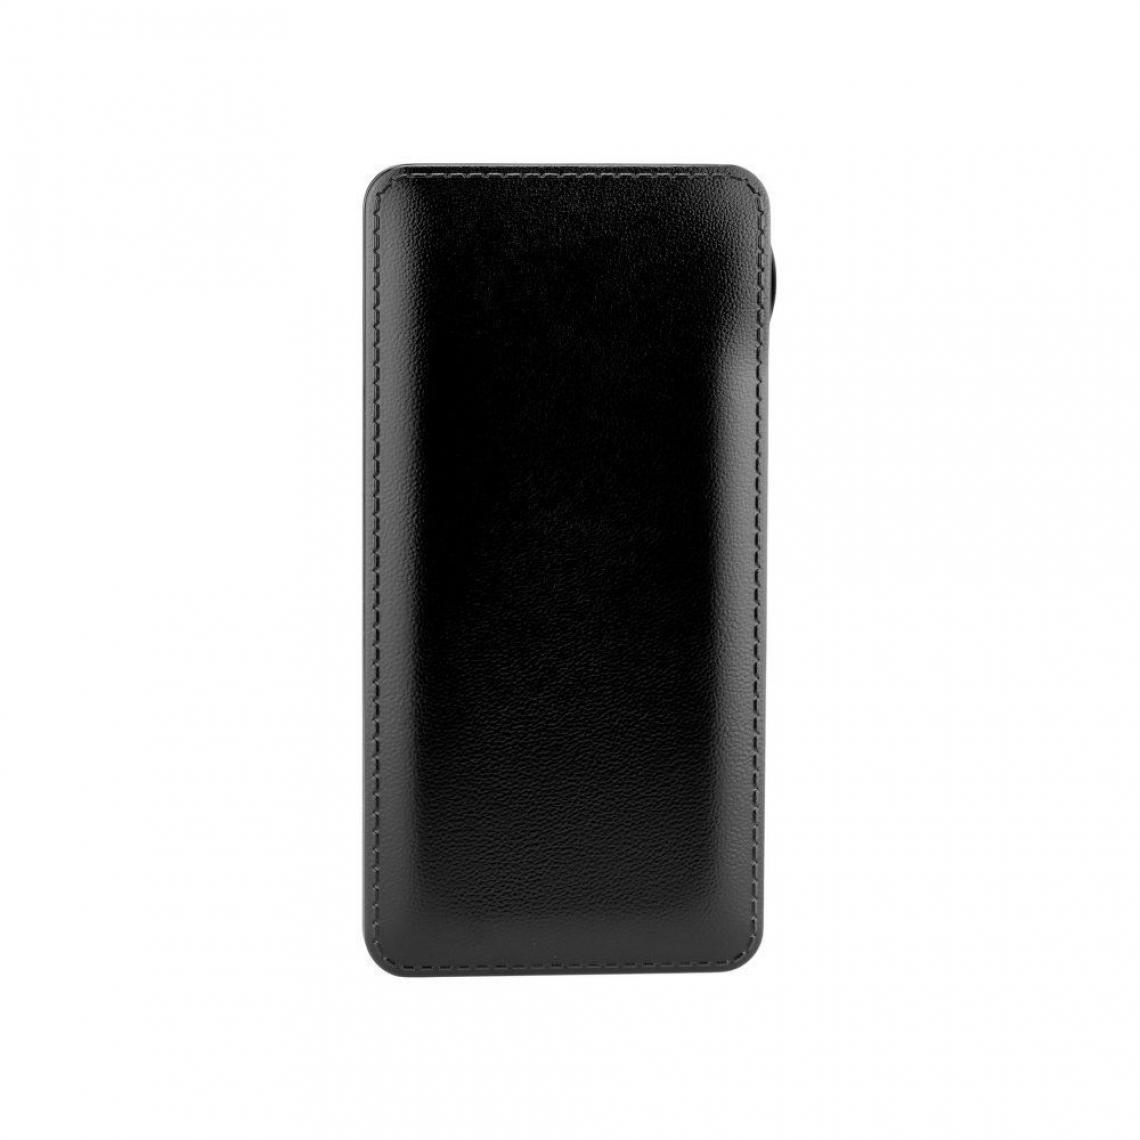 Ozzzo - Chargeur batterie externe 30000 mAh powerbank ozzzo noir pour Teclast M30 - Autres accessoires smartphone